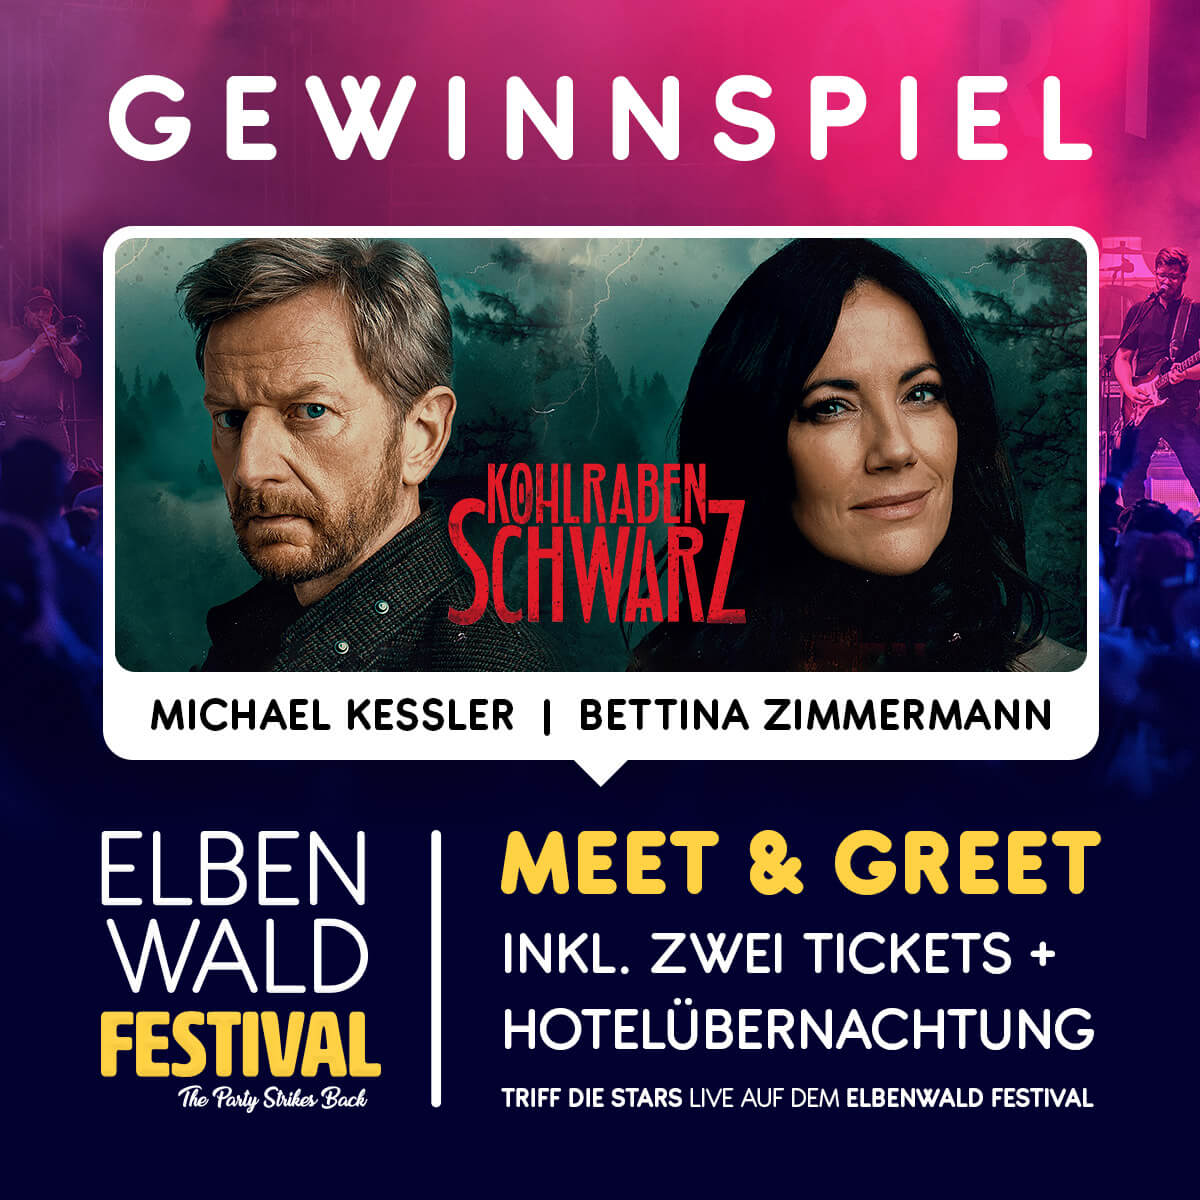 Kohlrabenschwarz Gewinnspiel - Meet & Greet mit den Stars auf dem Elbenwald Festival - inklusive Festival-Tickets und Hotelübernachtung